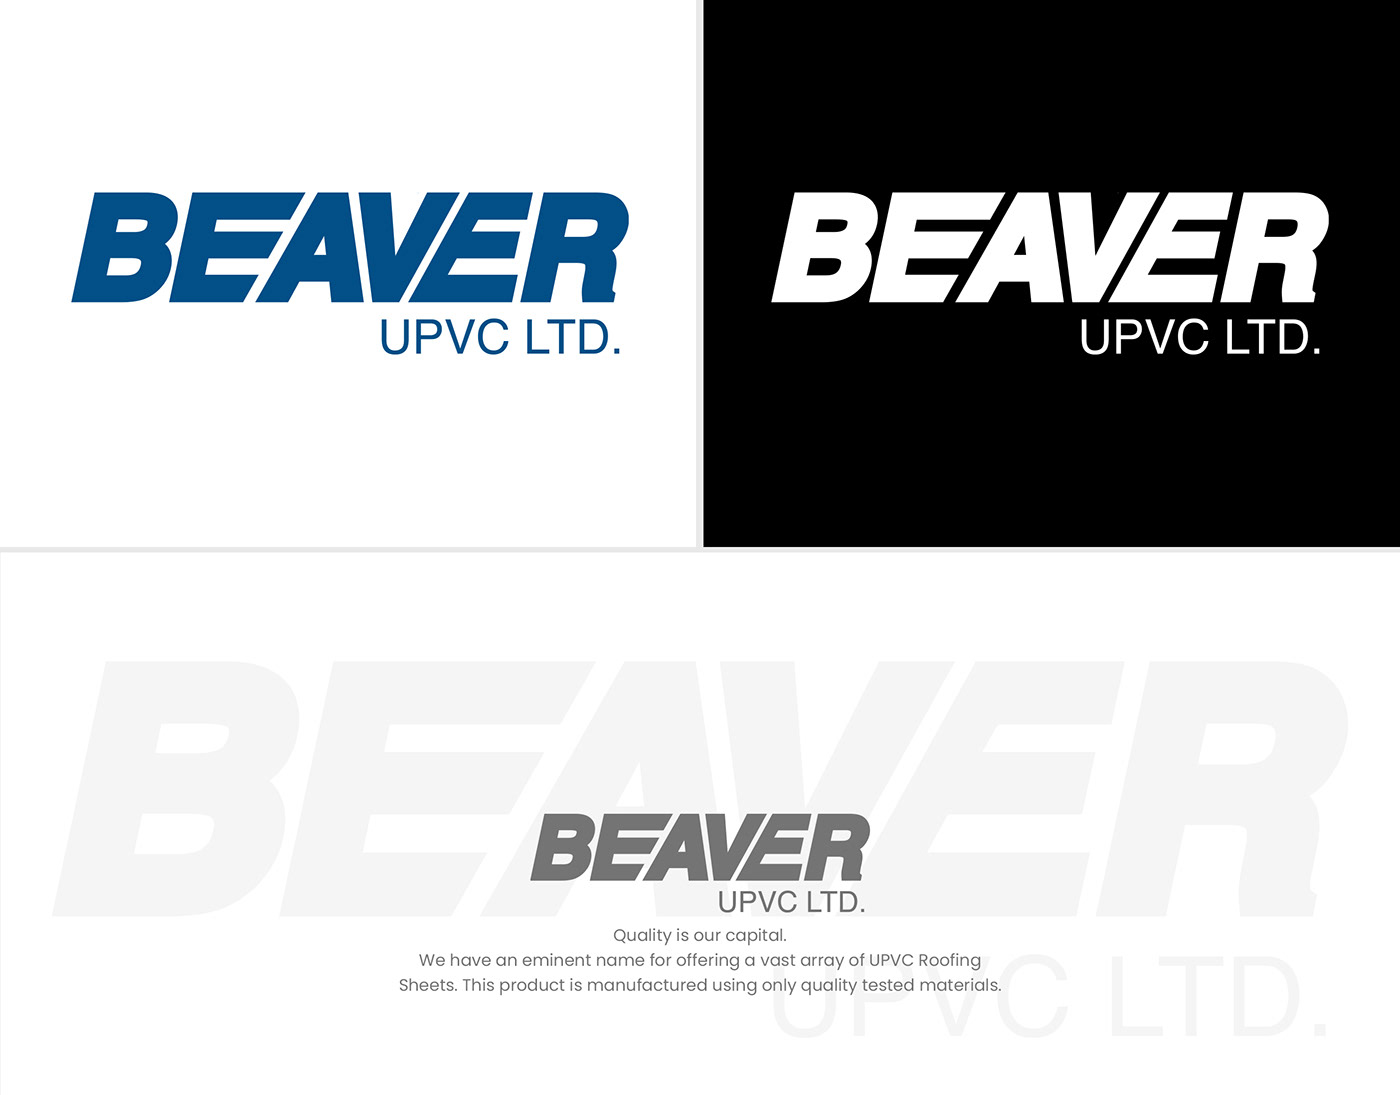 Logo Design logo brand identity logo visual identity Logo Graphic Designer beaver bd logo beaver logo design upvc brand logo upvc logo upvc rooftop logo